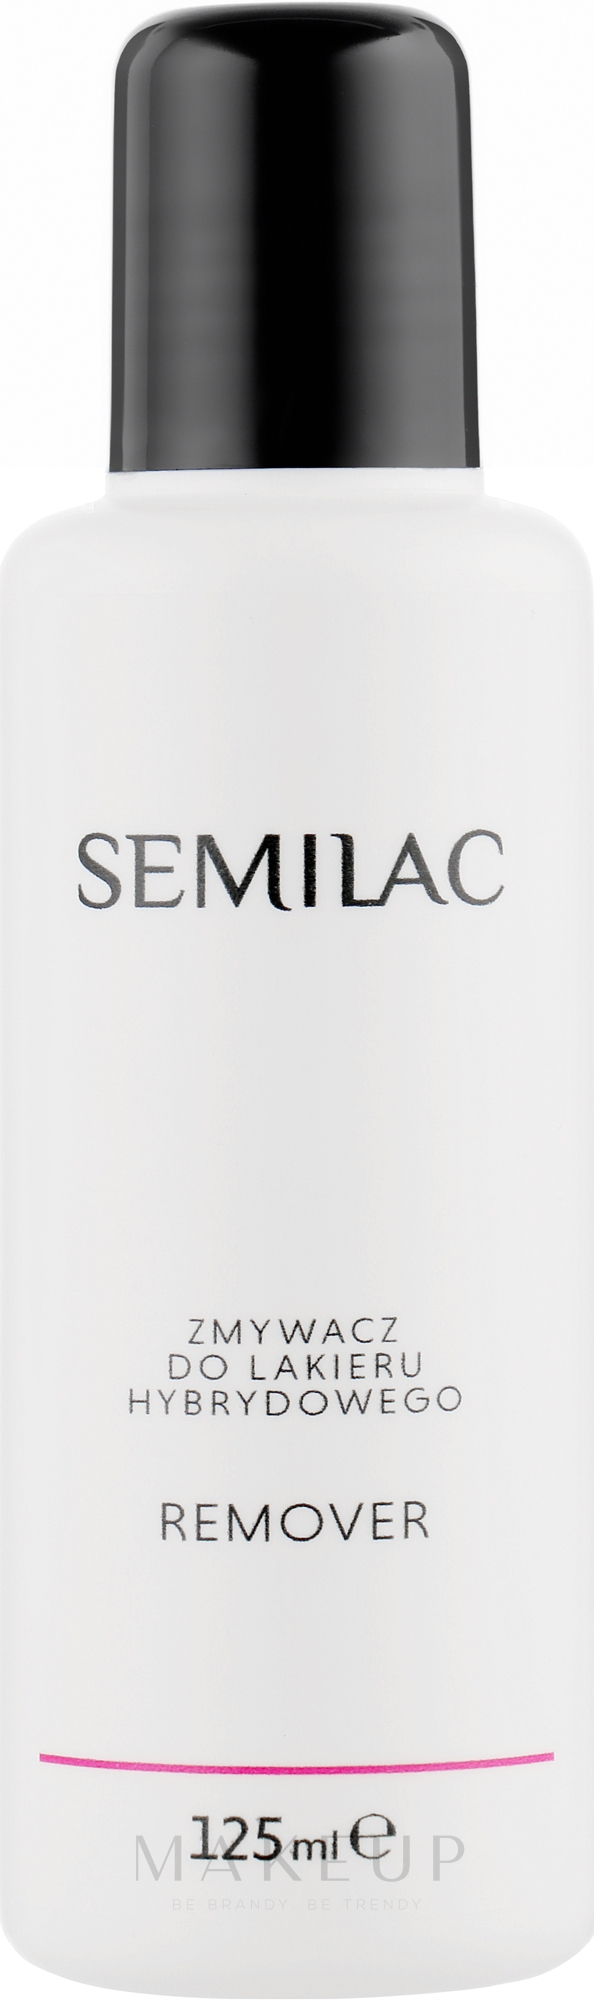 Gel-Nagellackentferner mit Lanolin - Semilac Remover — Bild 125 ml